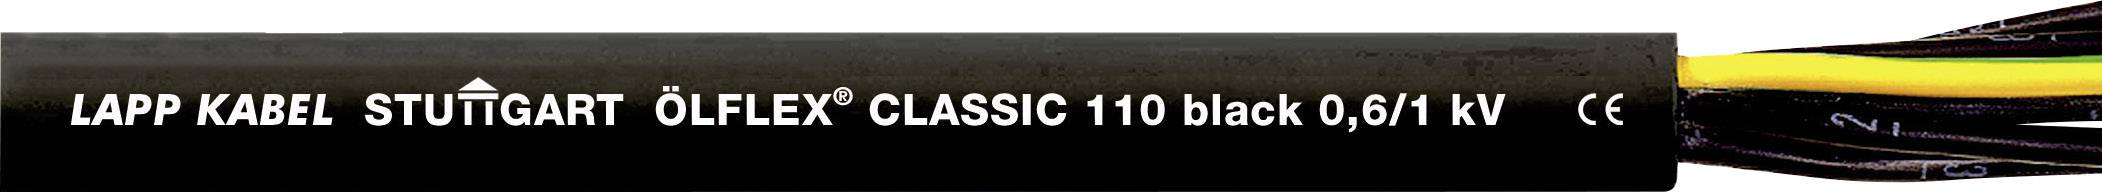 LAPP ÖLFLEX CLASSIC BLACK 110 Steuerleitung 12 G 1.50 mm² Schwarz 1120320-1 Meterware